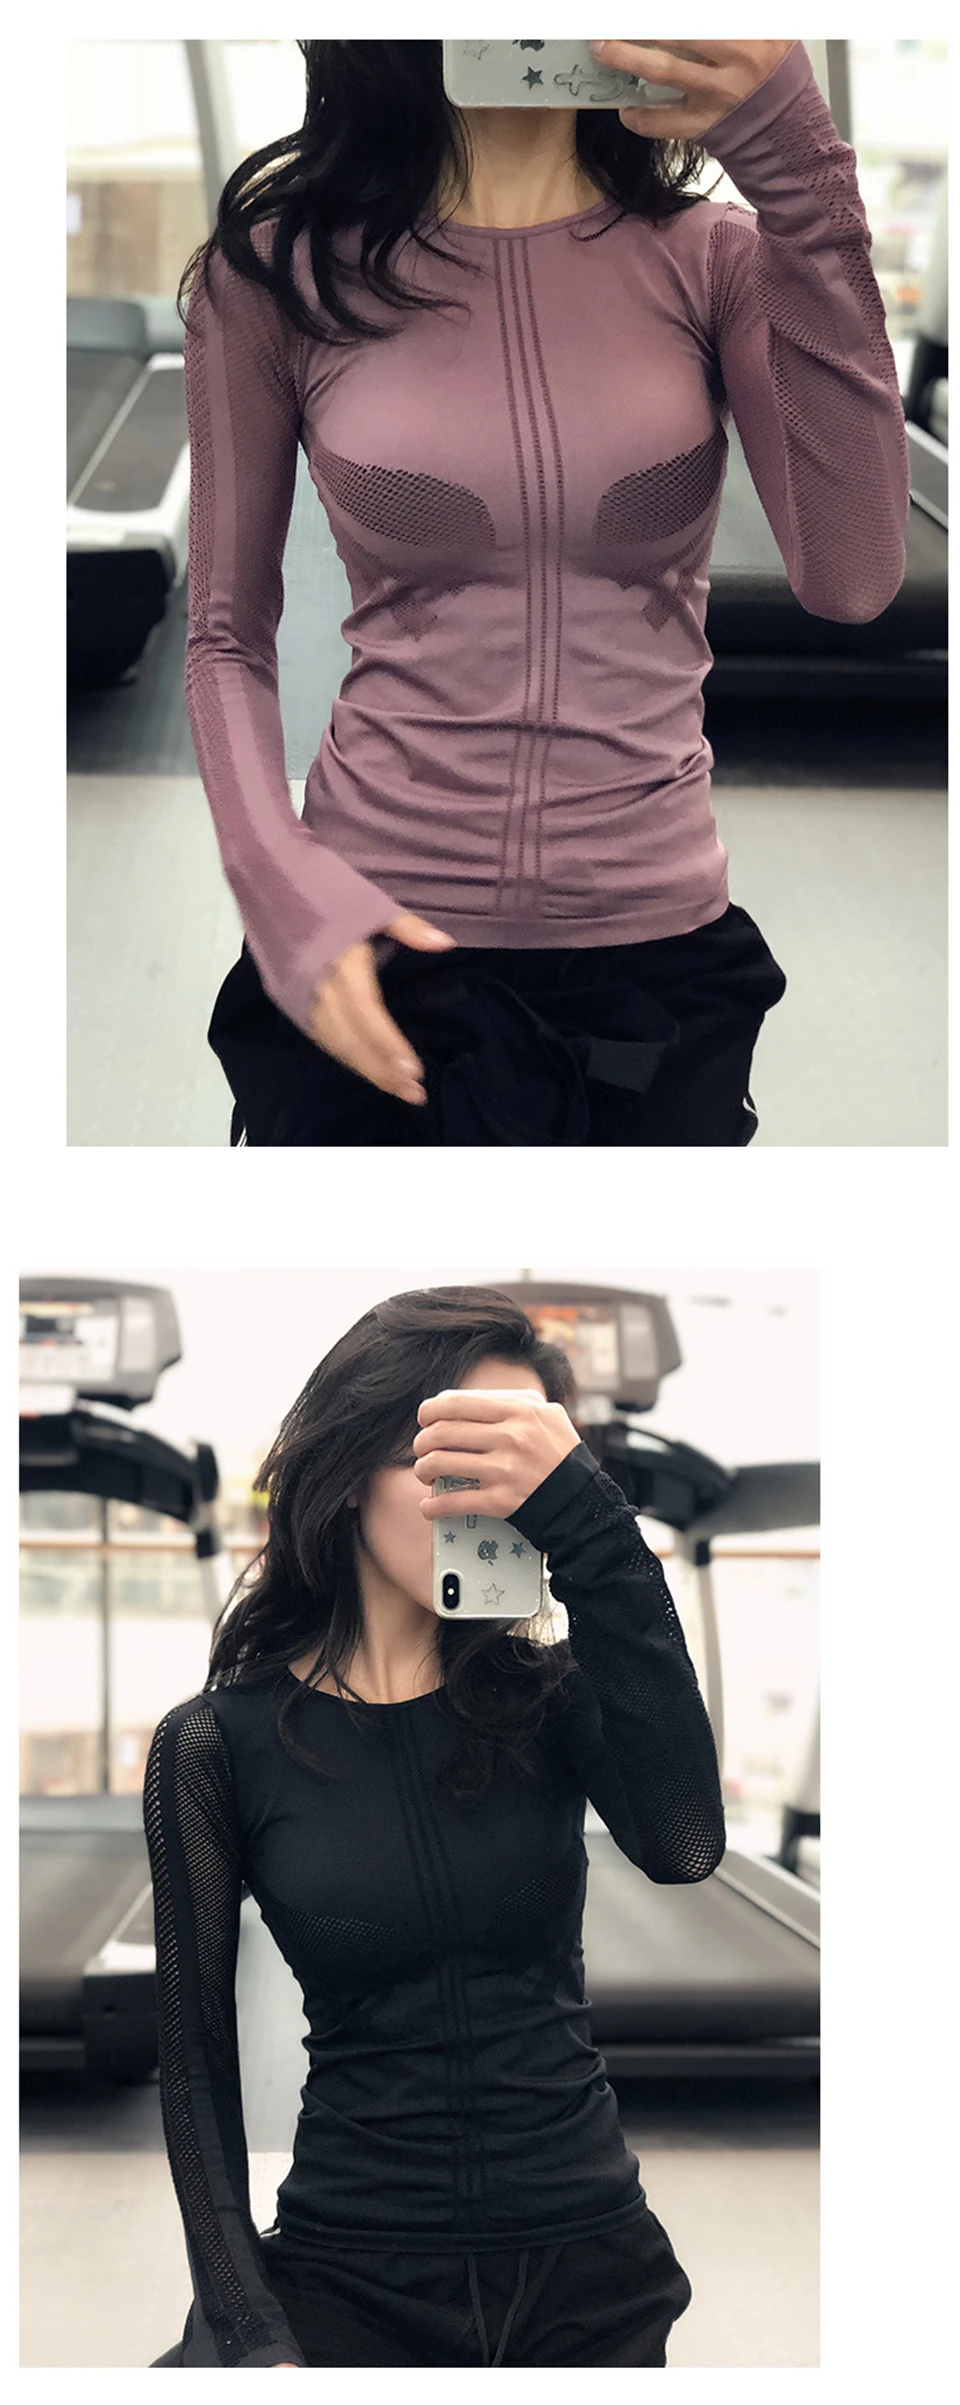 Йога Топы Женская Спортивная одежда s m l Air Mesh с длинным рукавом рубашка для йоги и бега спортивные топы Для Бега Фитнес тренировки Спортивная одежда для женщин